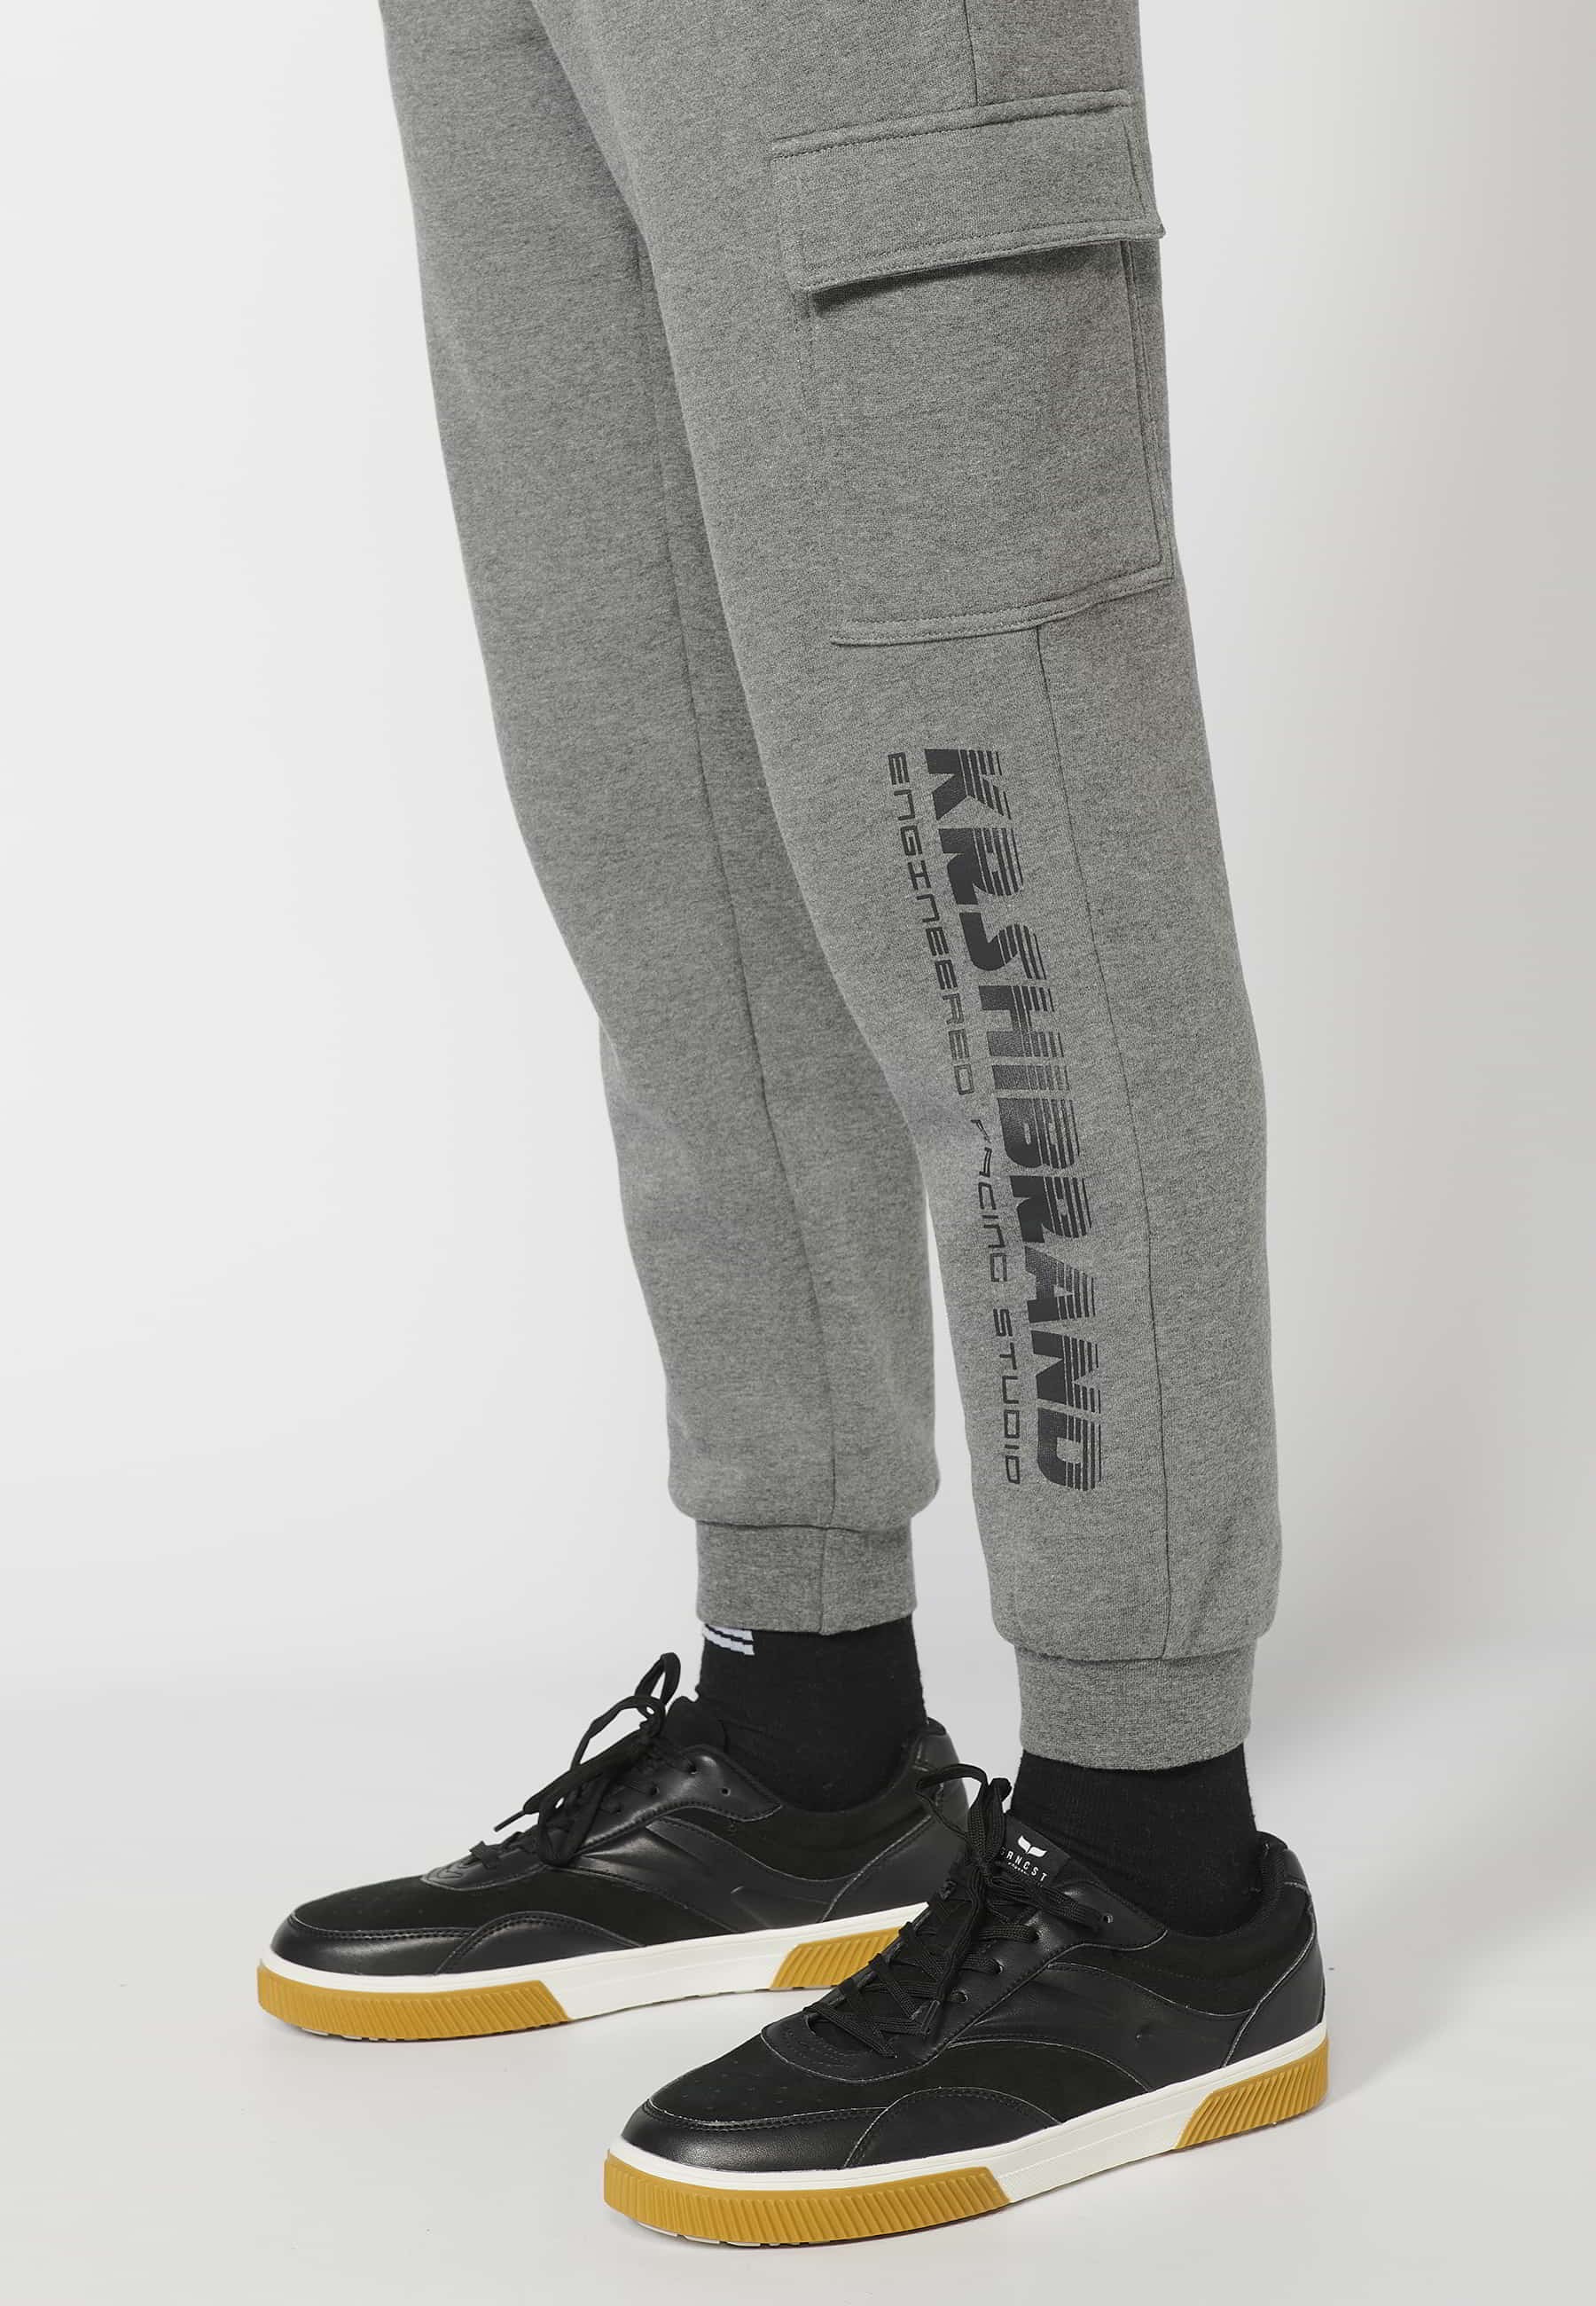 Pantalon de jogging long avec taille élastique réglable, poche cargo, couleur Gris pour Homme